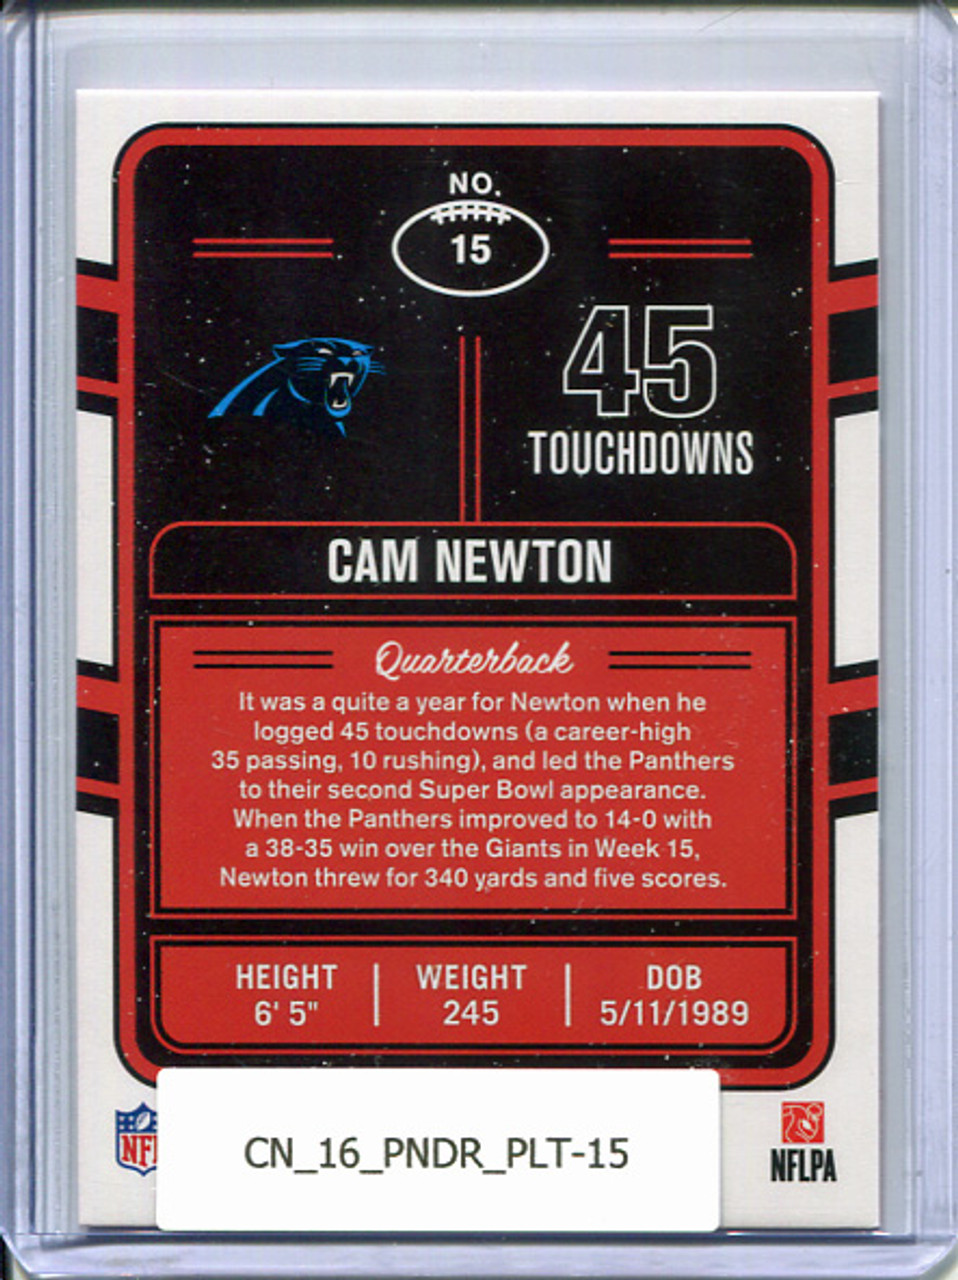 Cam Newton 2016 Donruss, Production Line Touchdowns #15